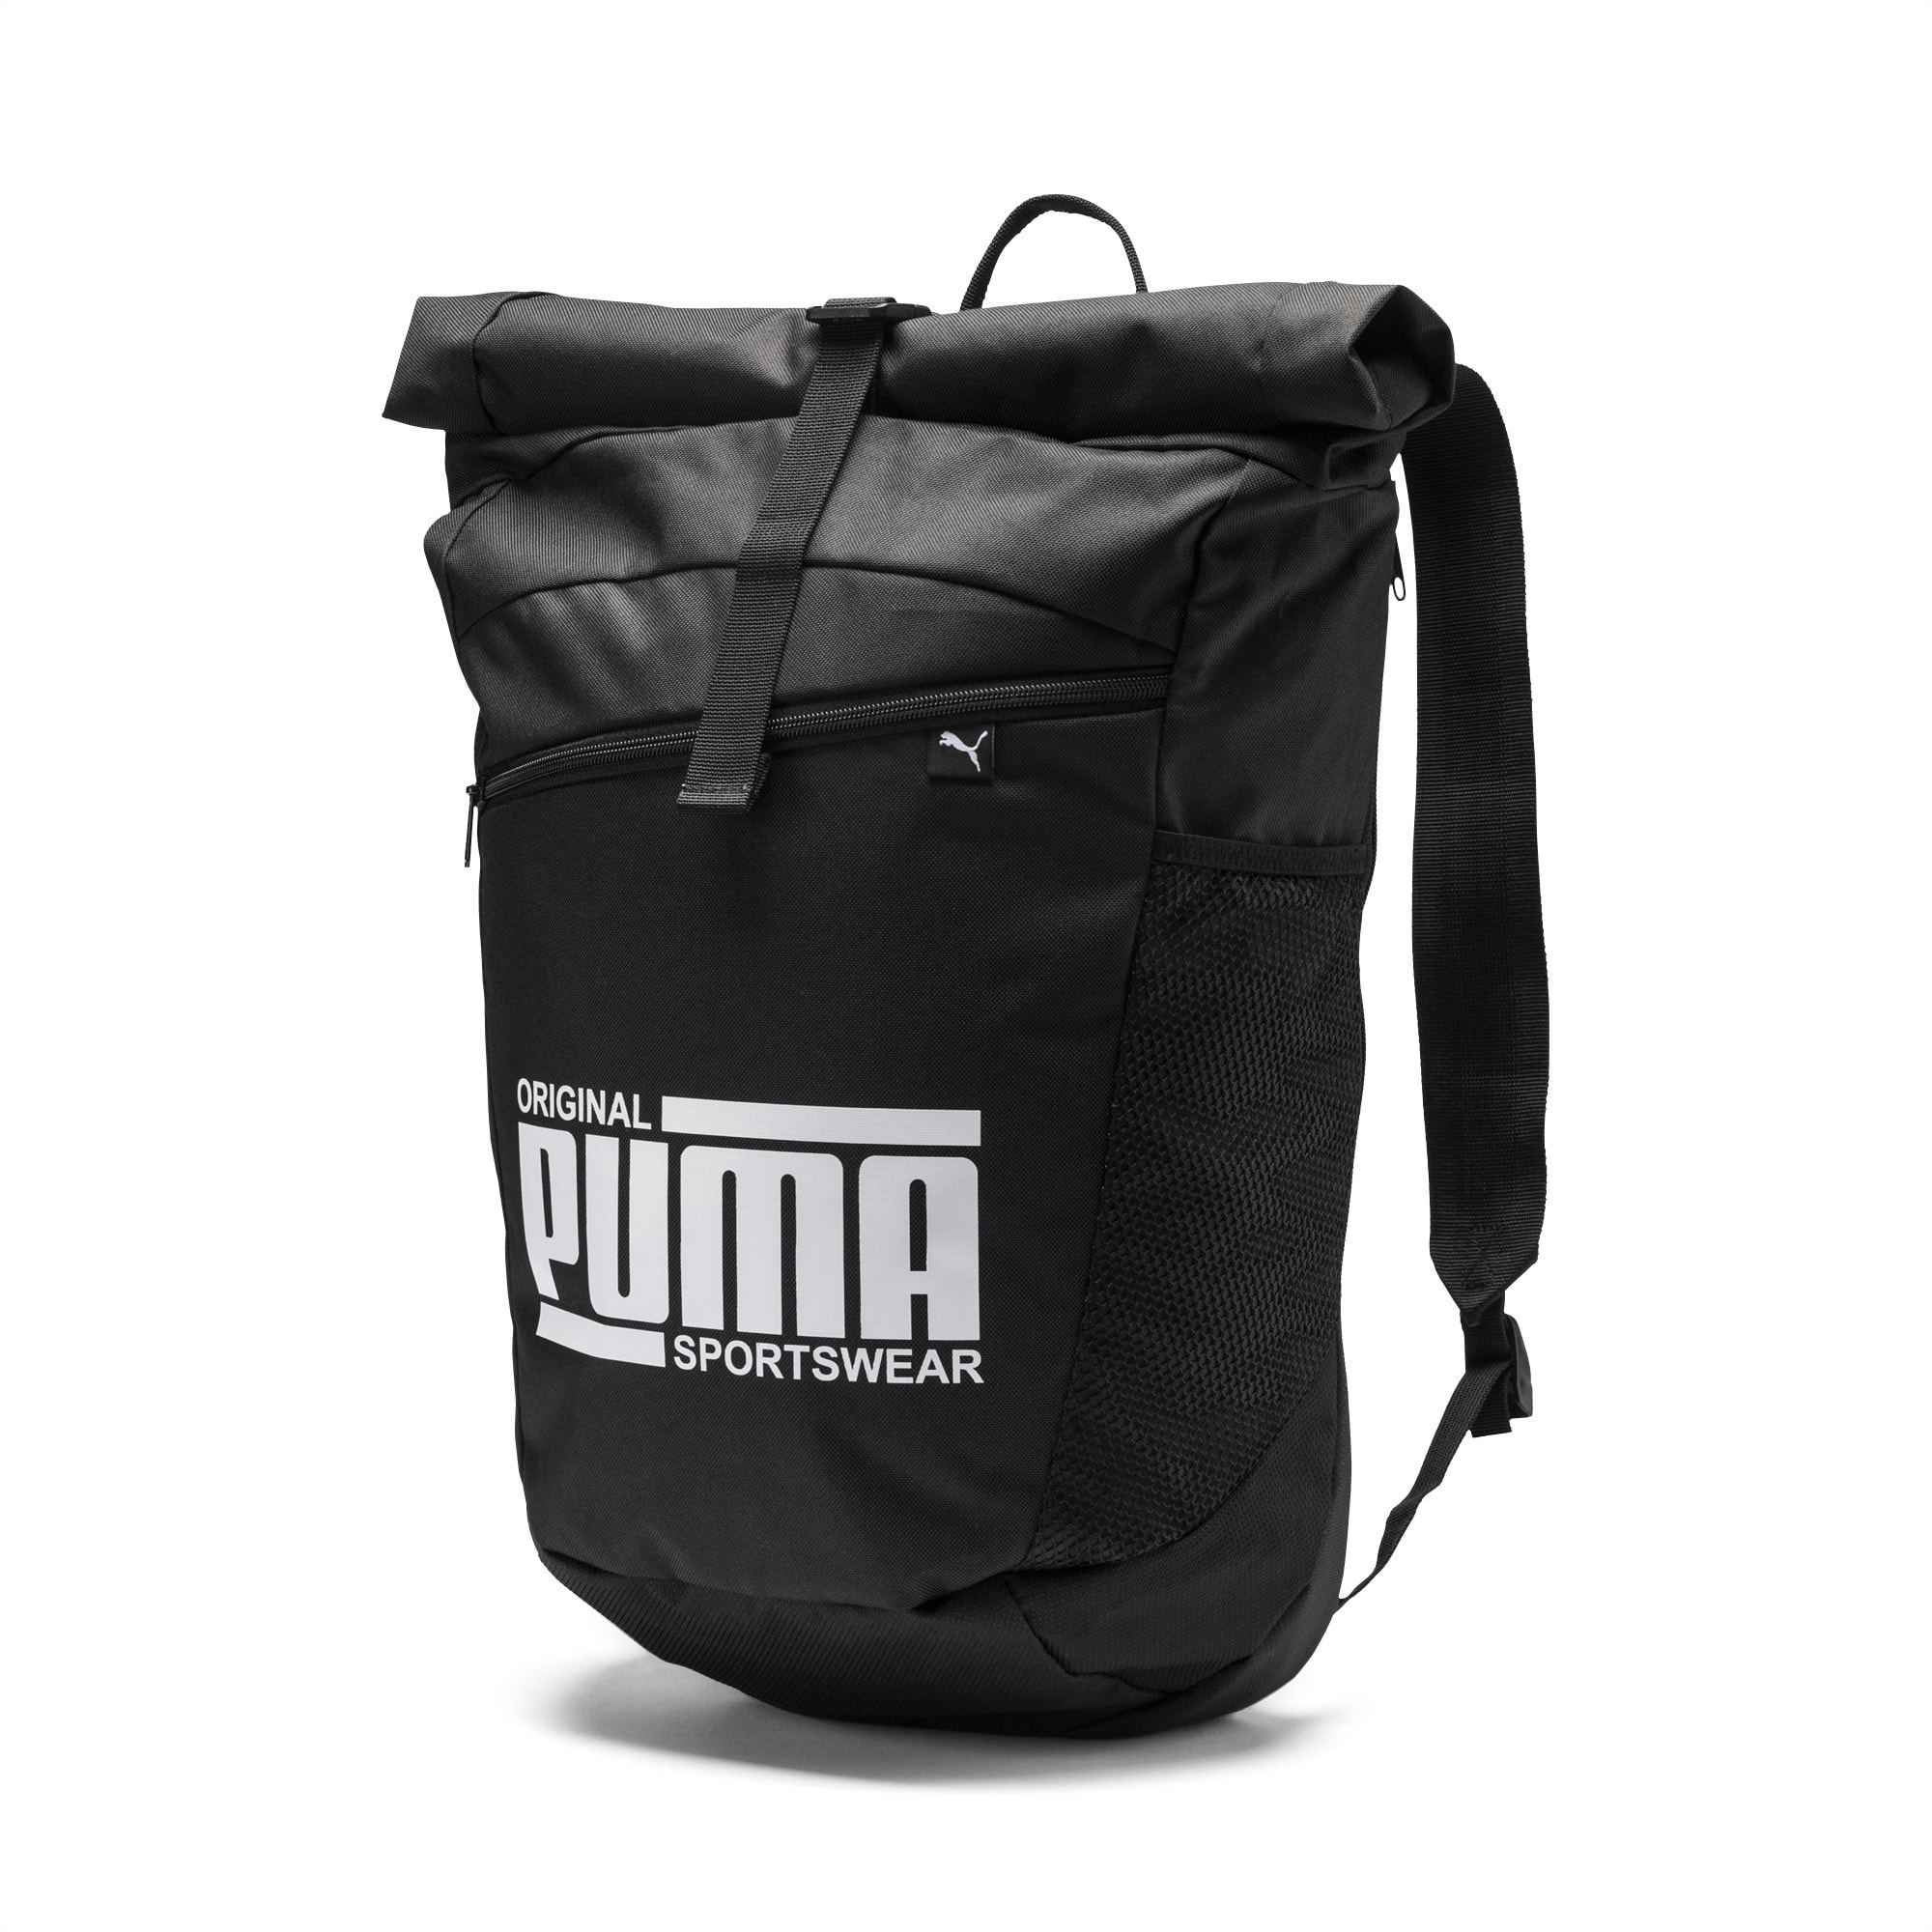 puma sole backpack